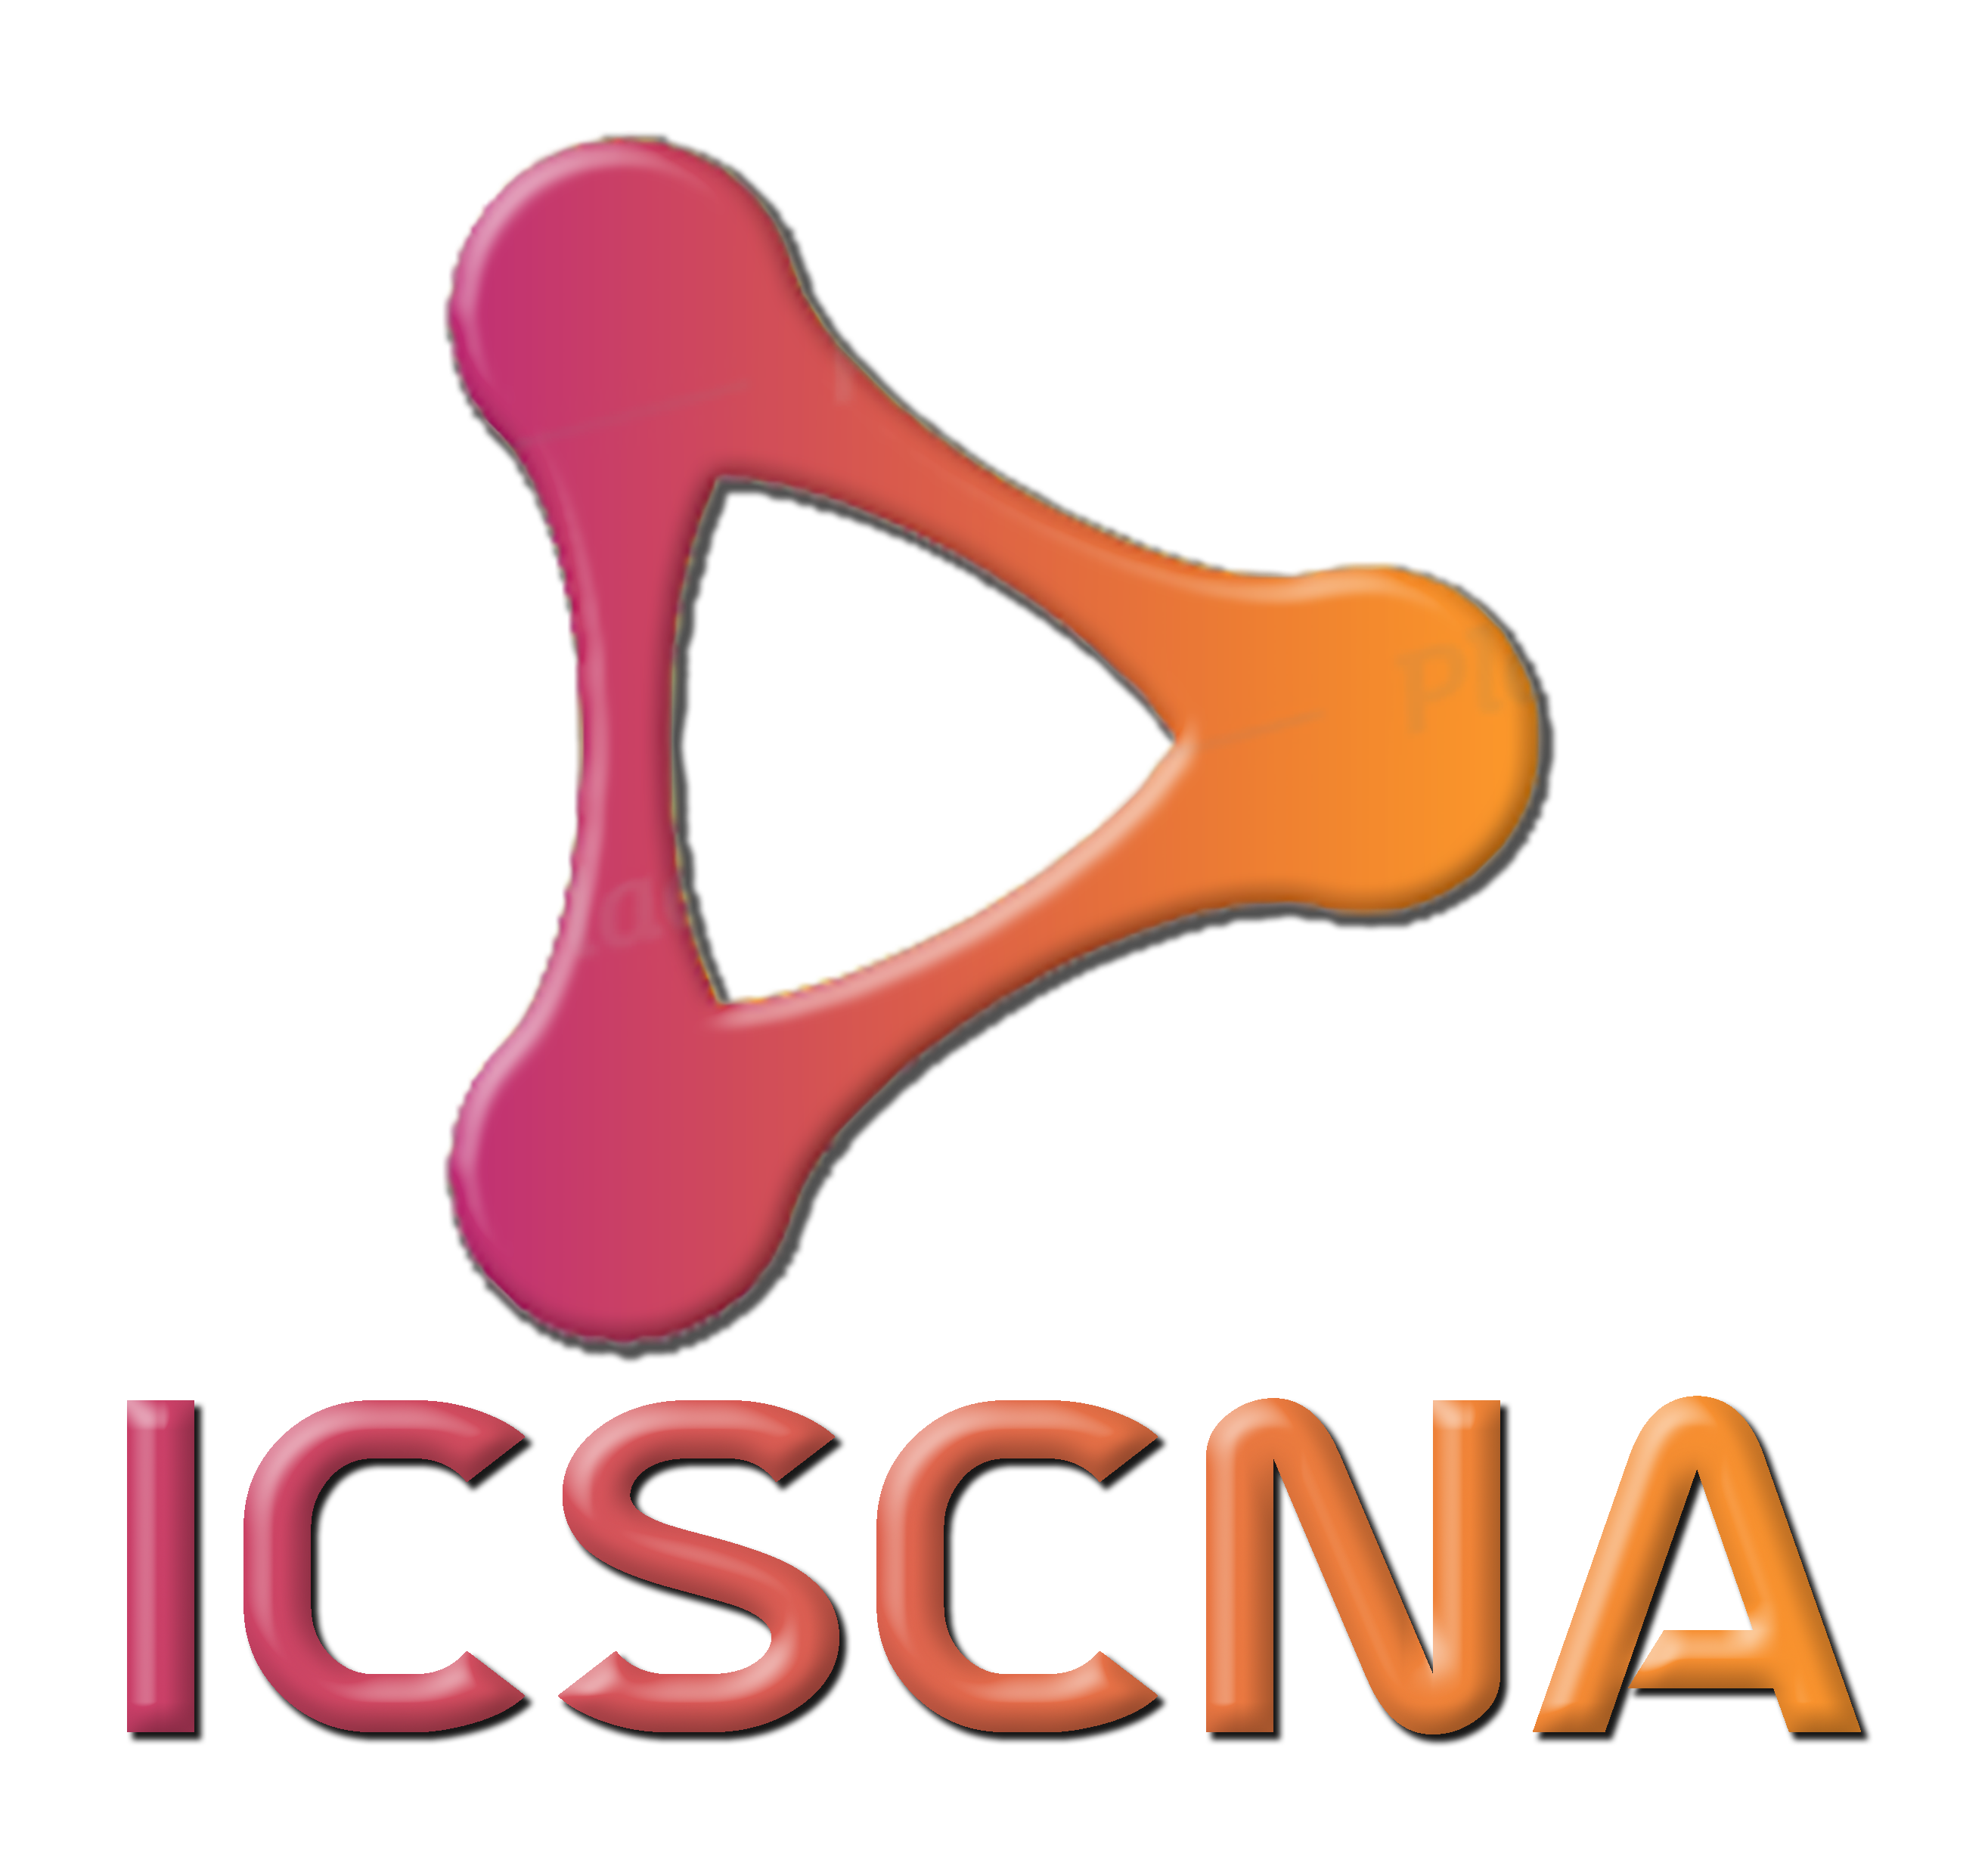 icscna logo